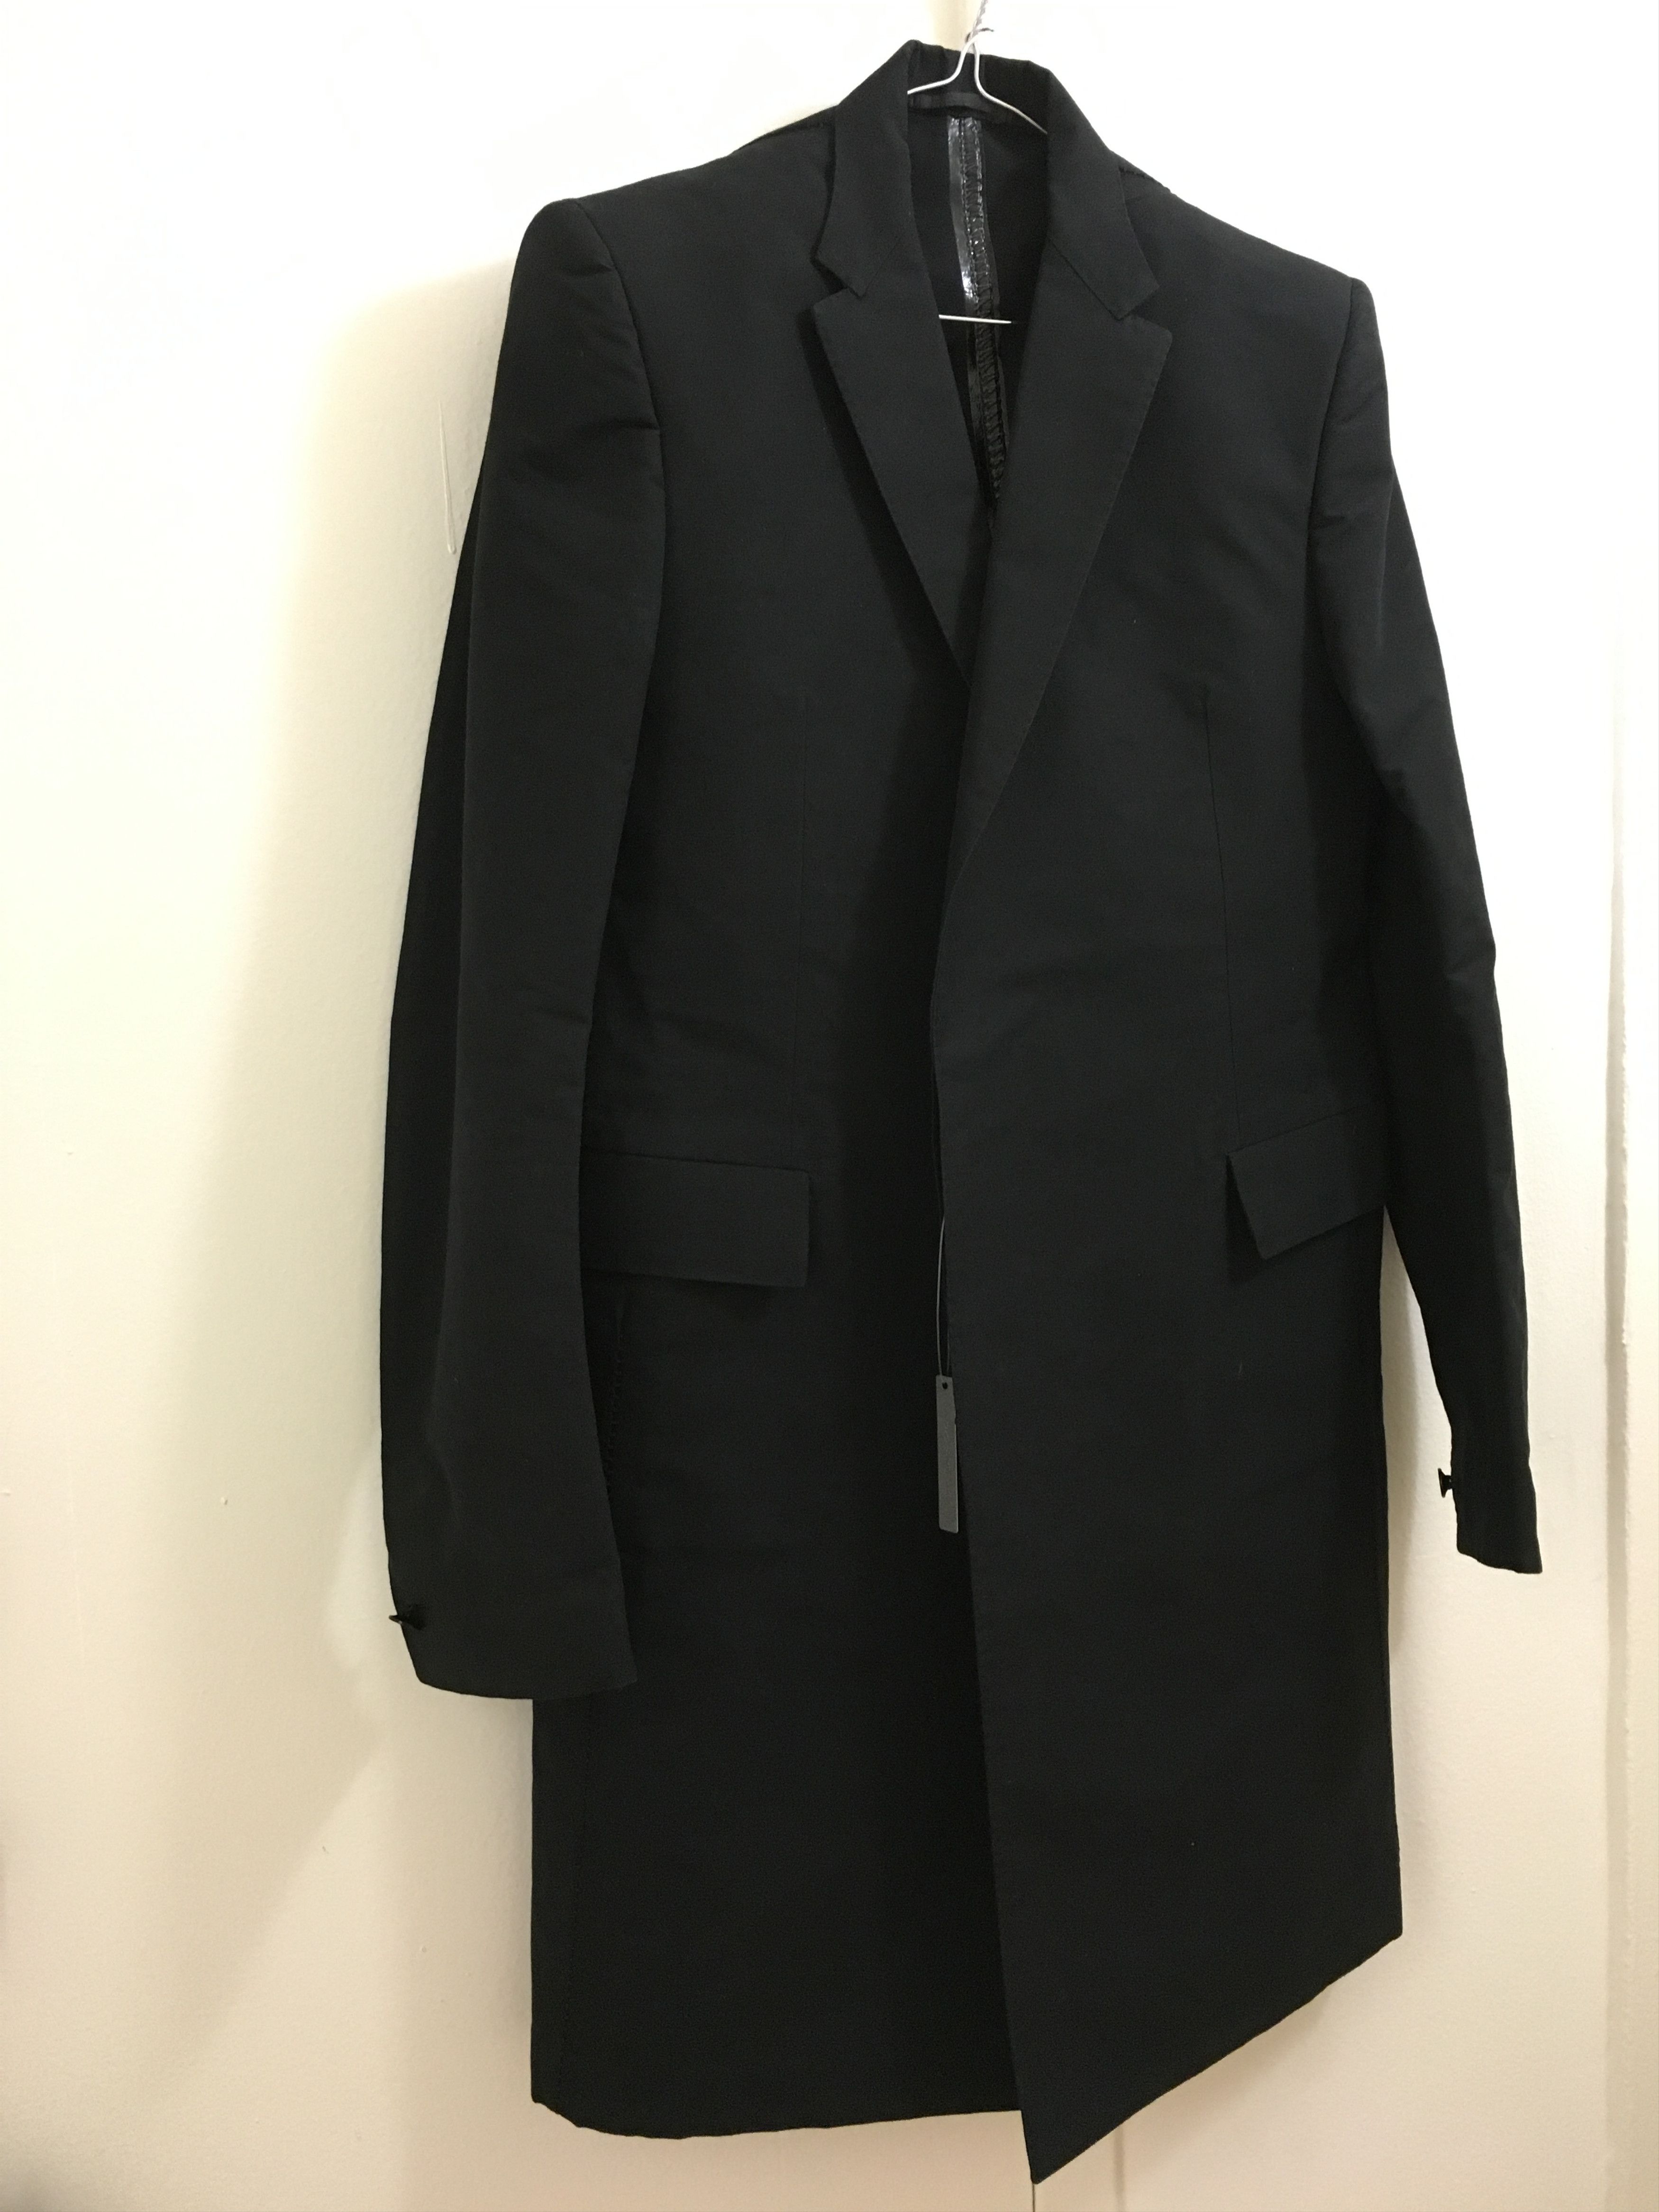 Carol Christian Poell CORAWO Long Jacket Visible Meltlock (Last Drop - 1500$ BIN) Size US L / EU 52-54 / 3 - 2 Preview